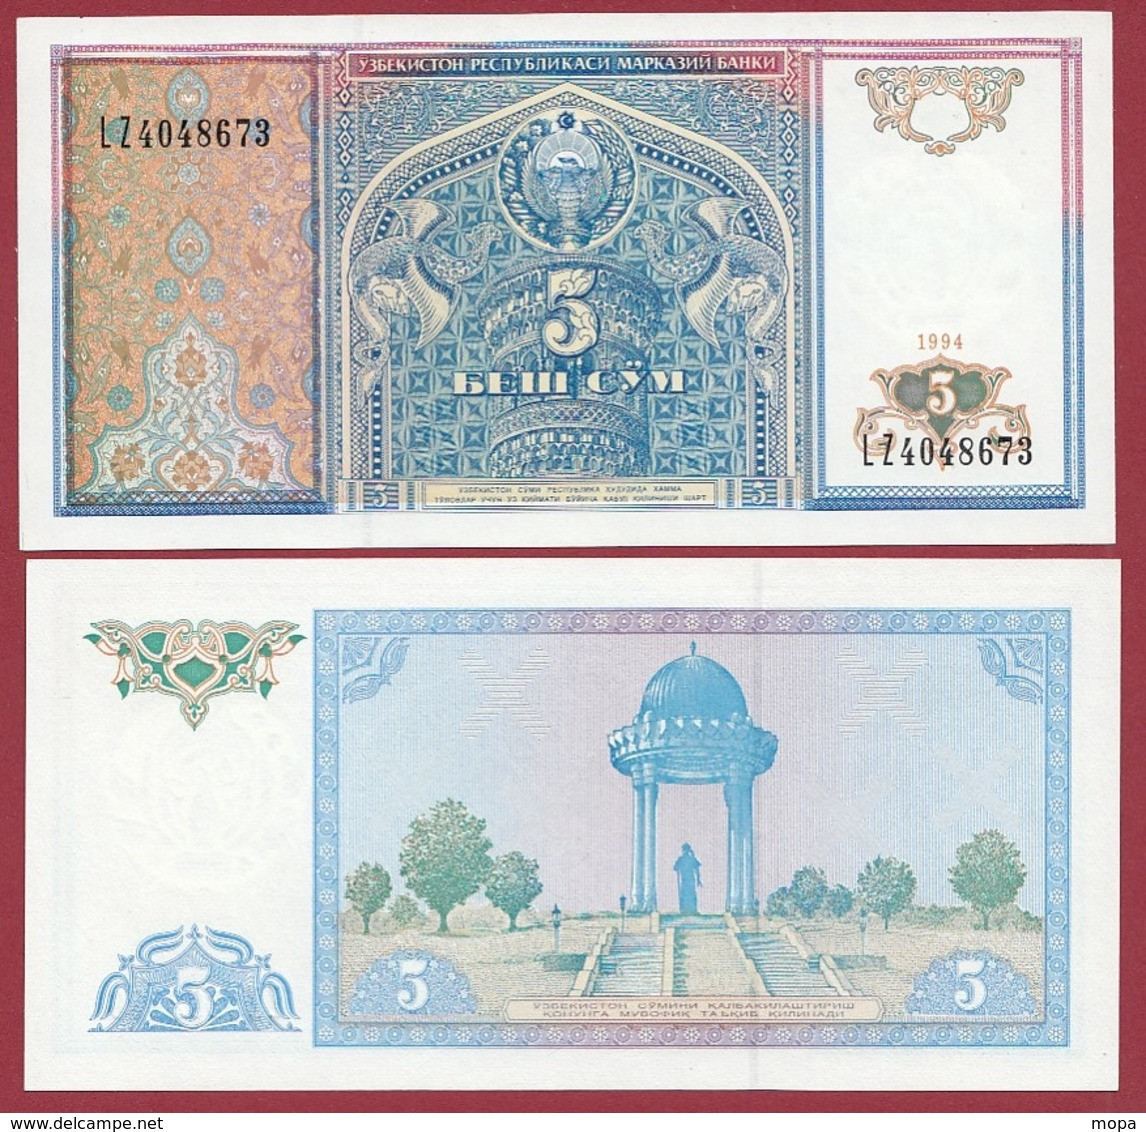 Ouzbékistan 5 Sum 1994  (UNC-NEUF) --(194) - Usbekistan